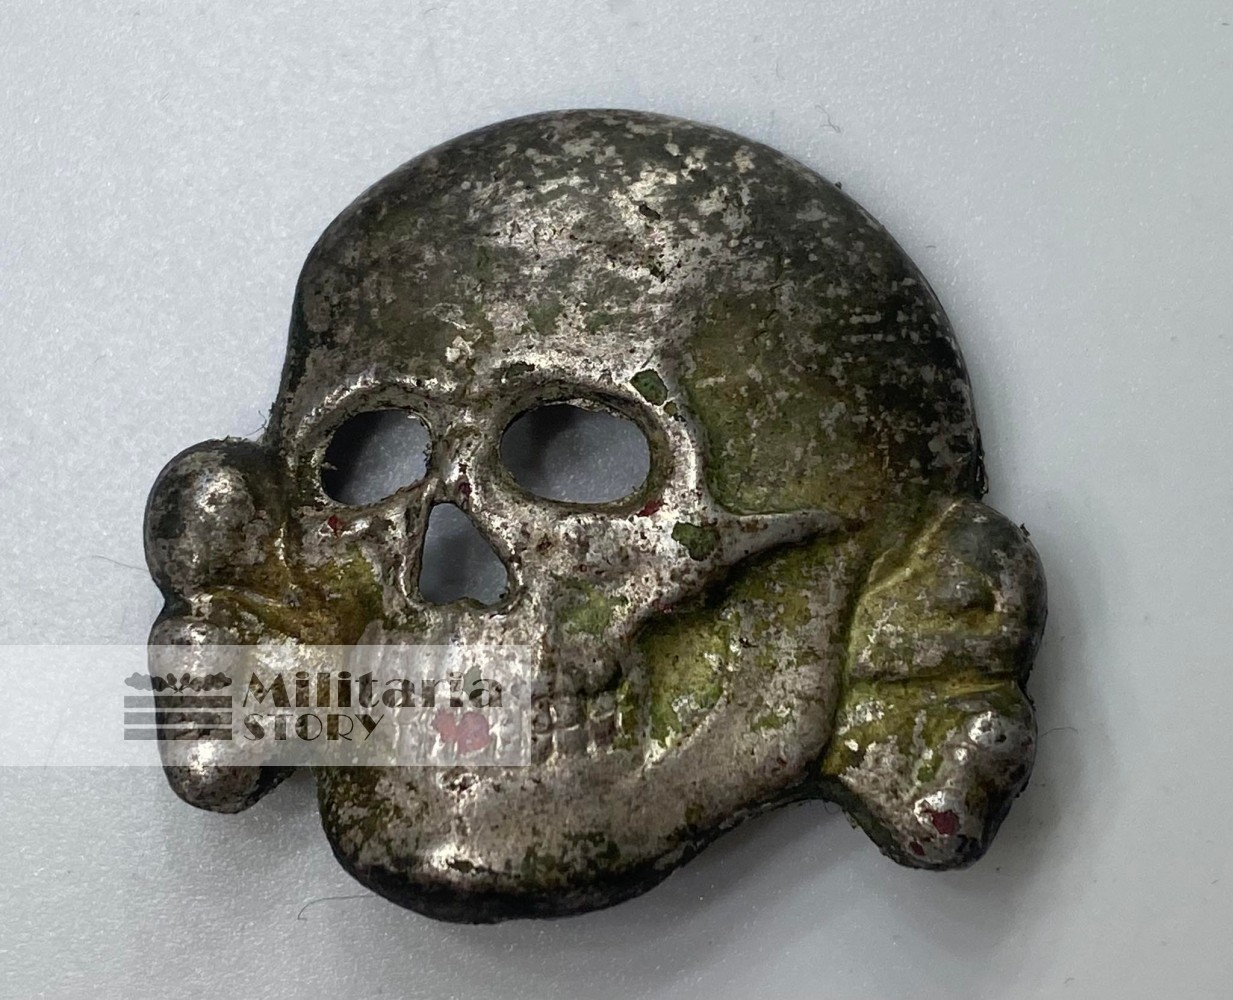  Deschler SS RZM 52 skull -  Deschler SS RZM 52 skull: Third Reich Insignia